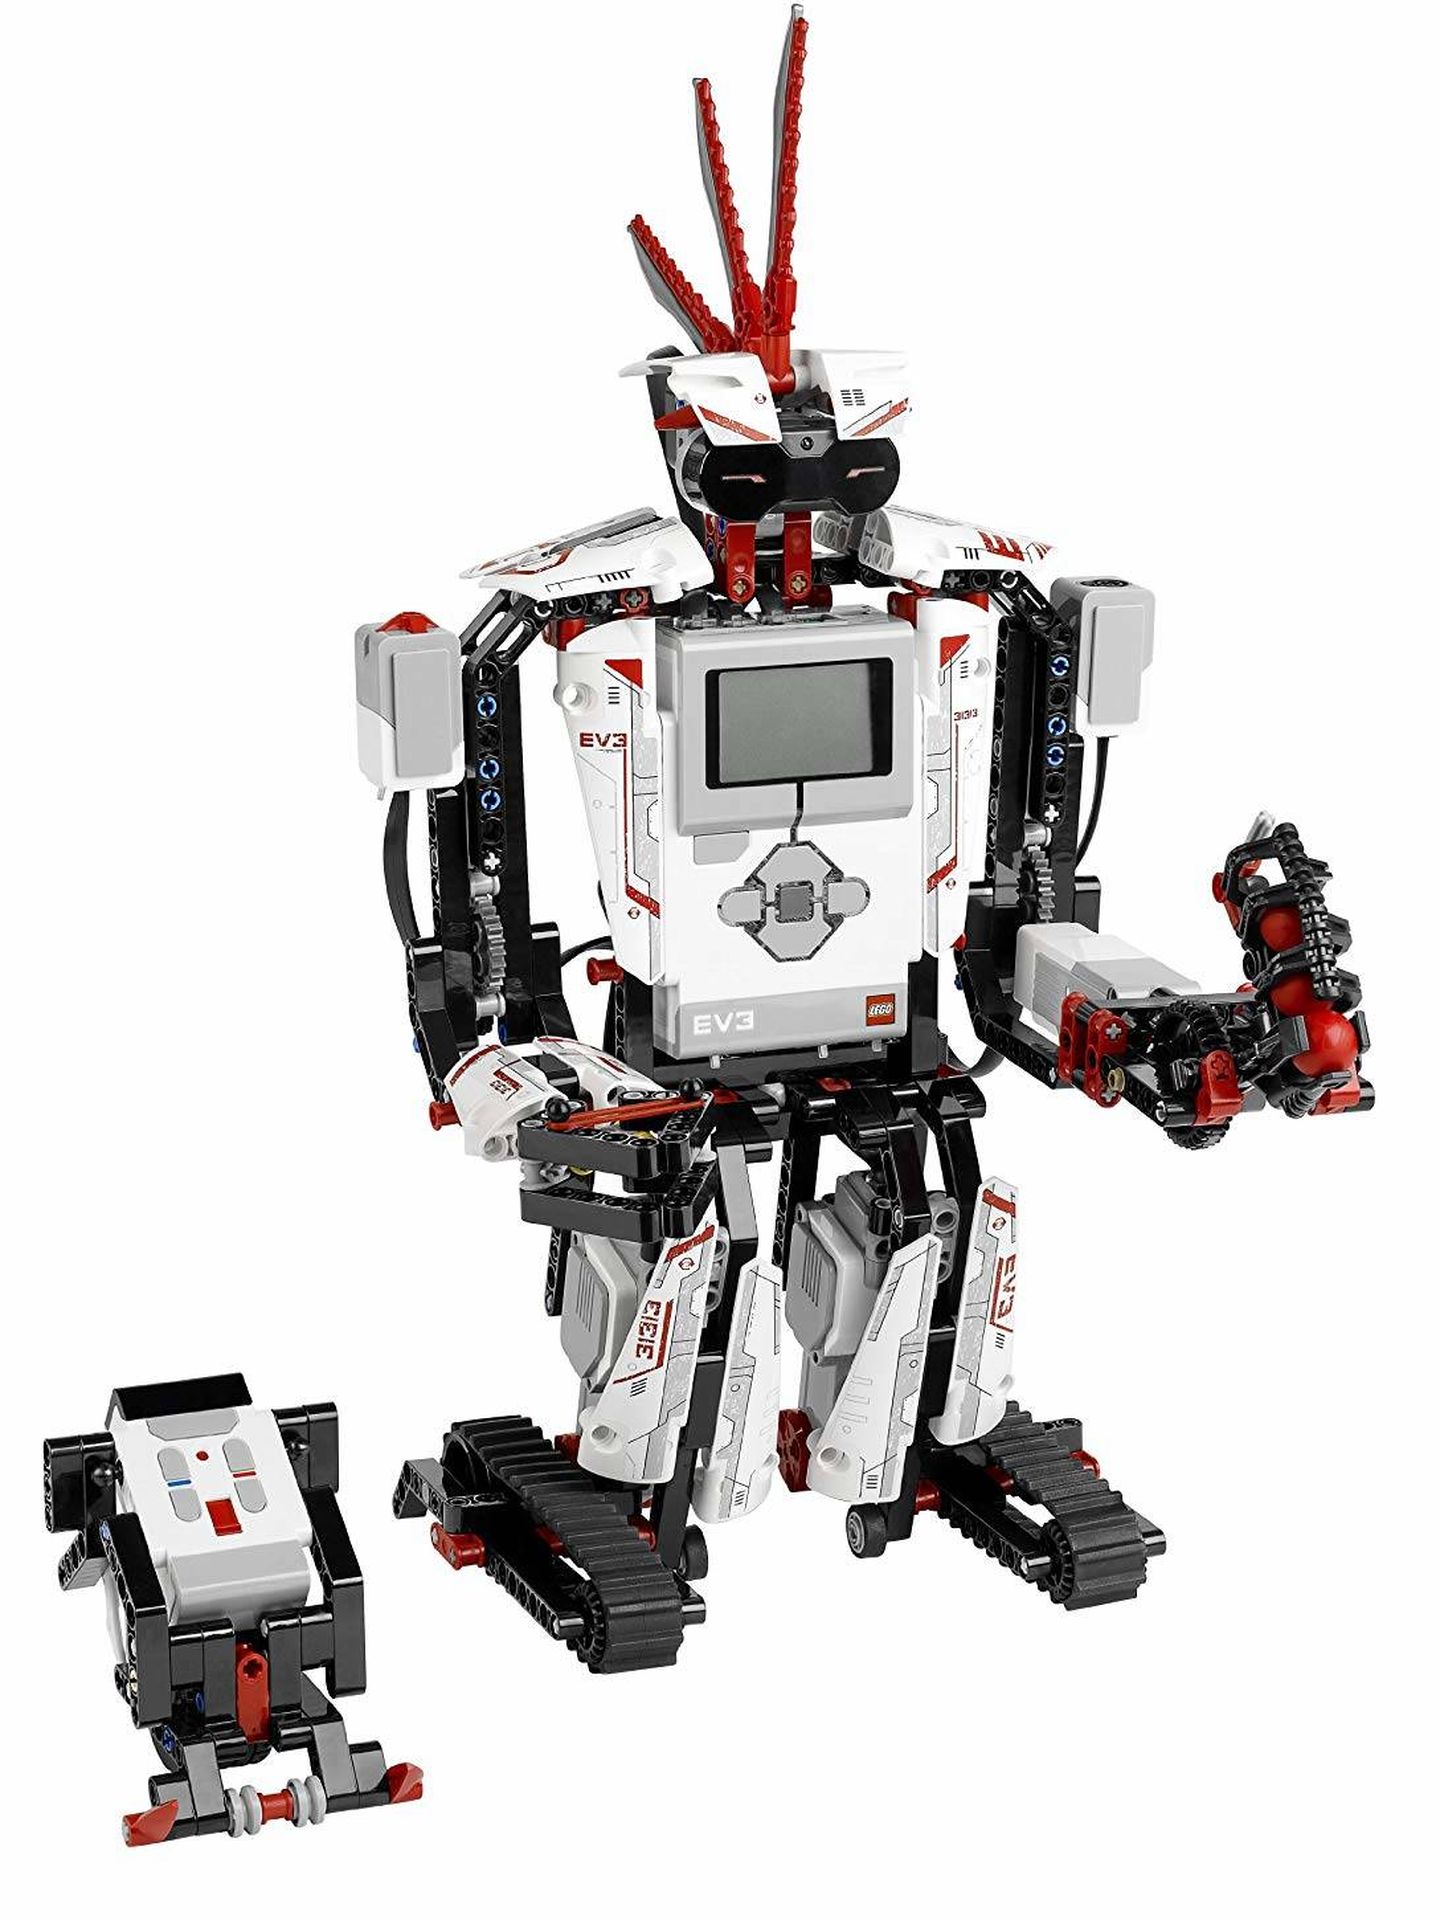 Un robot construido con piezas de Lego. En el centro, el ‘ladrillo’ EV3. (Imagen: Amazon)